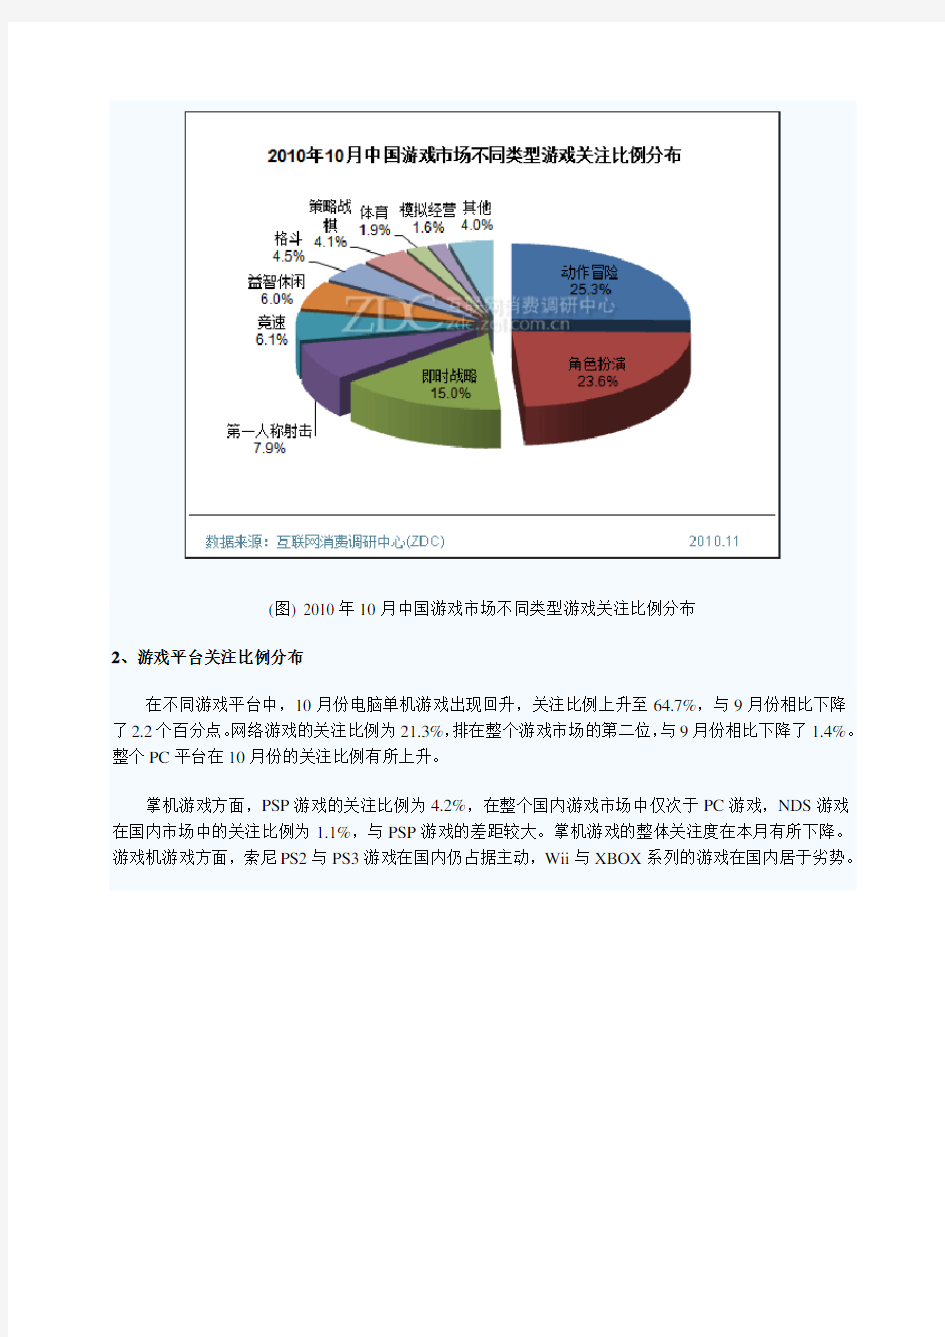 中国游戏市场分析报告